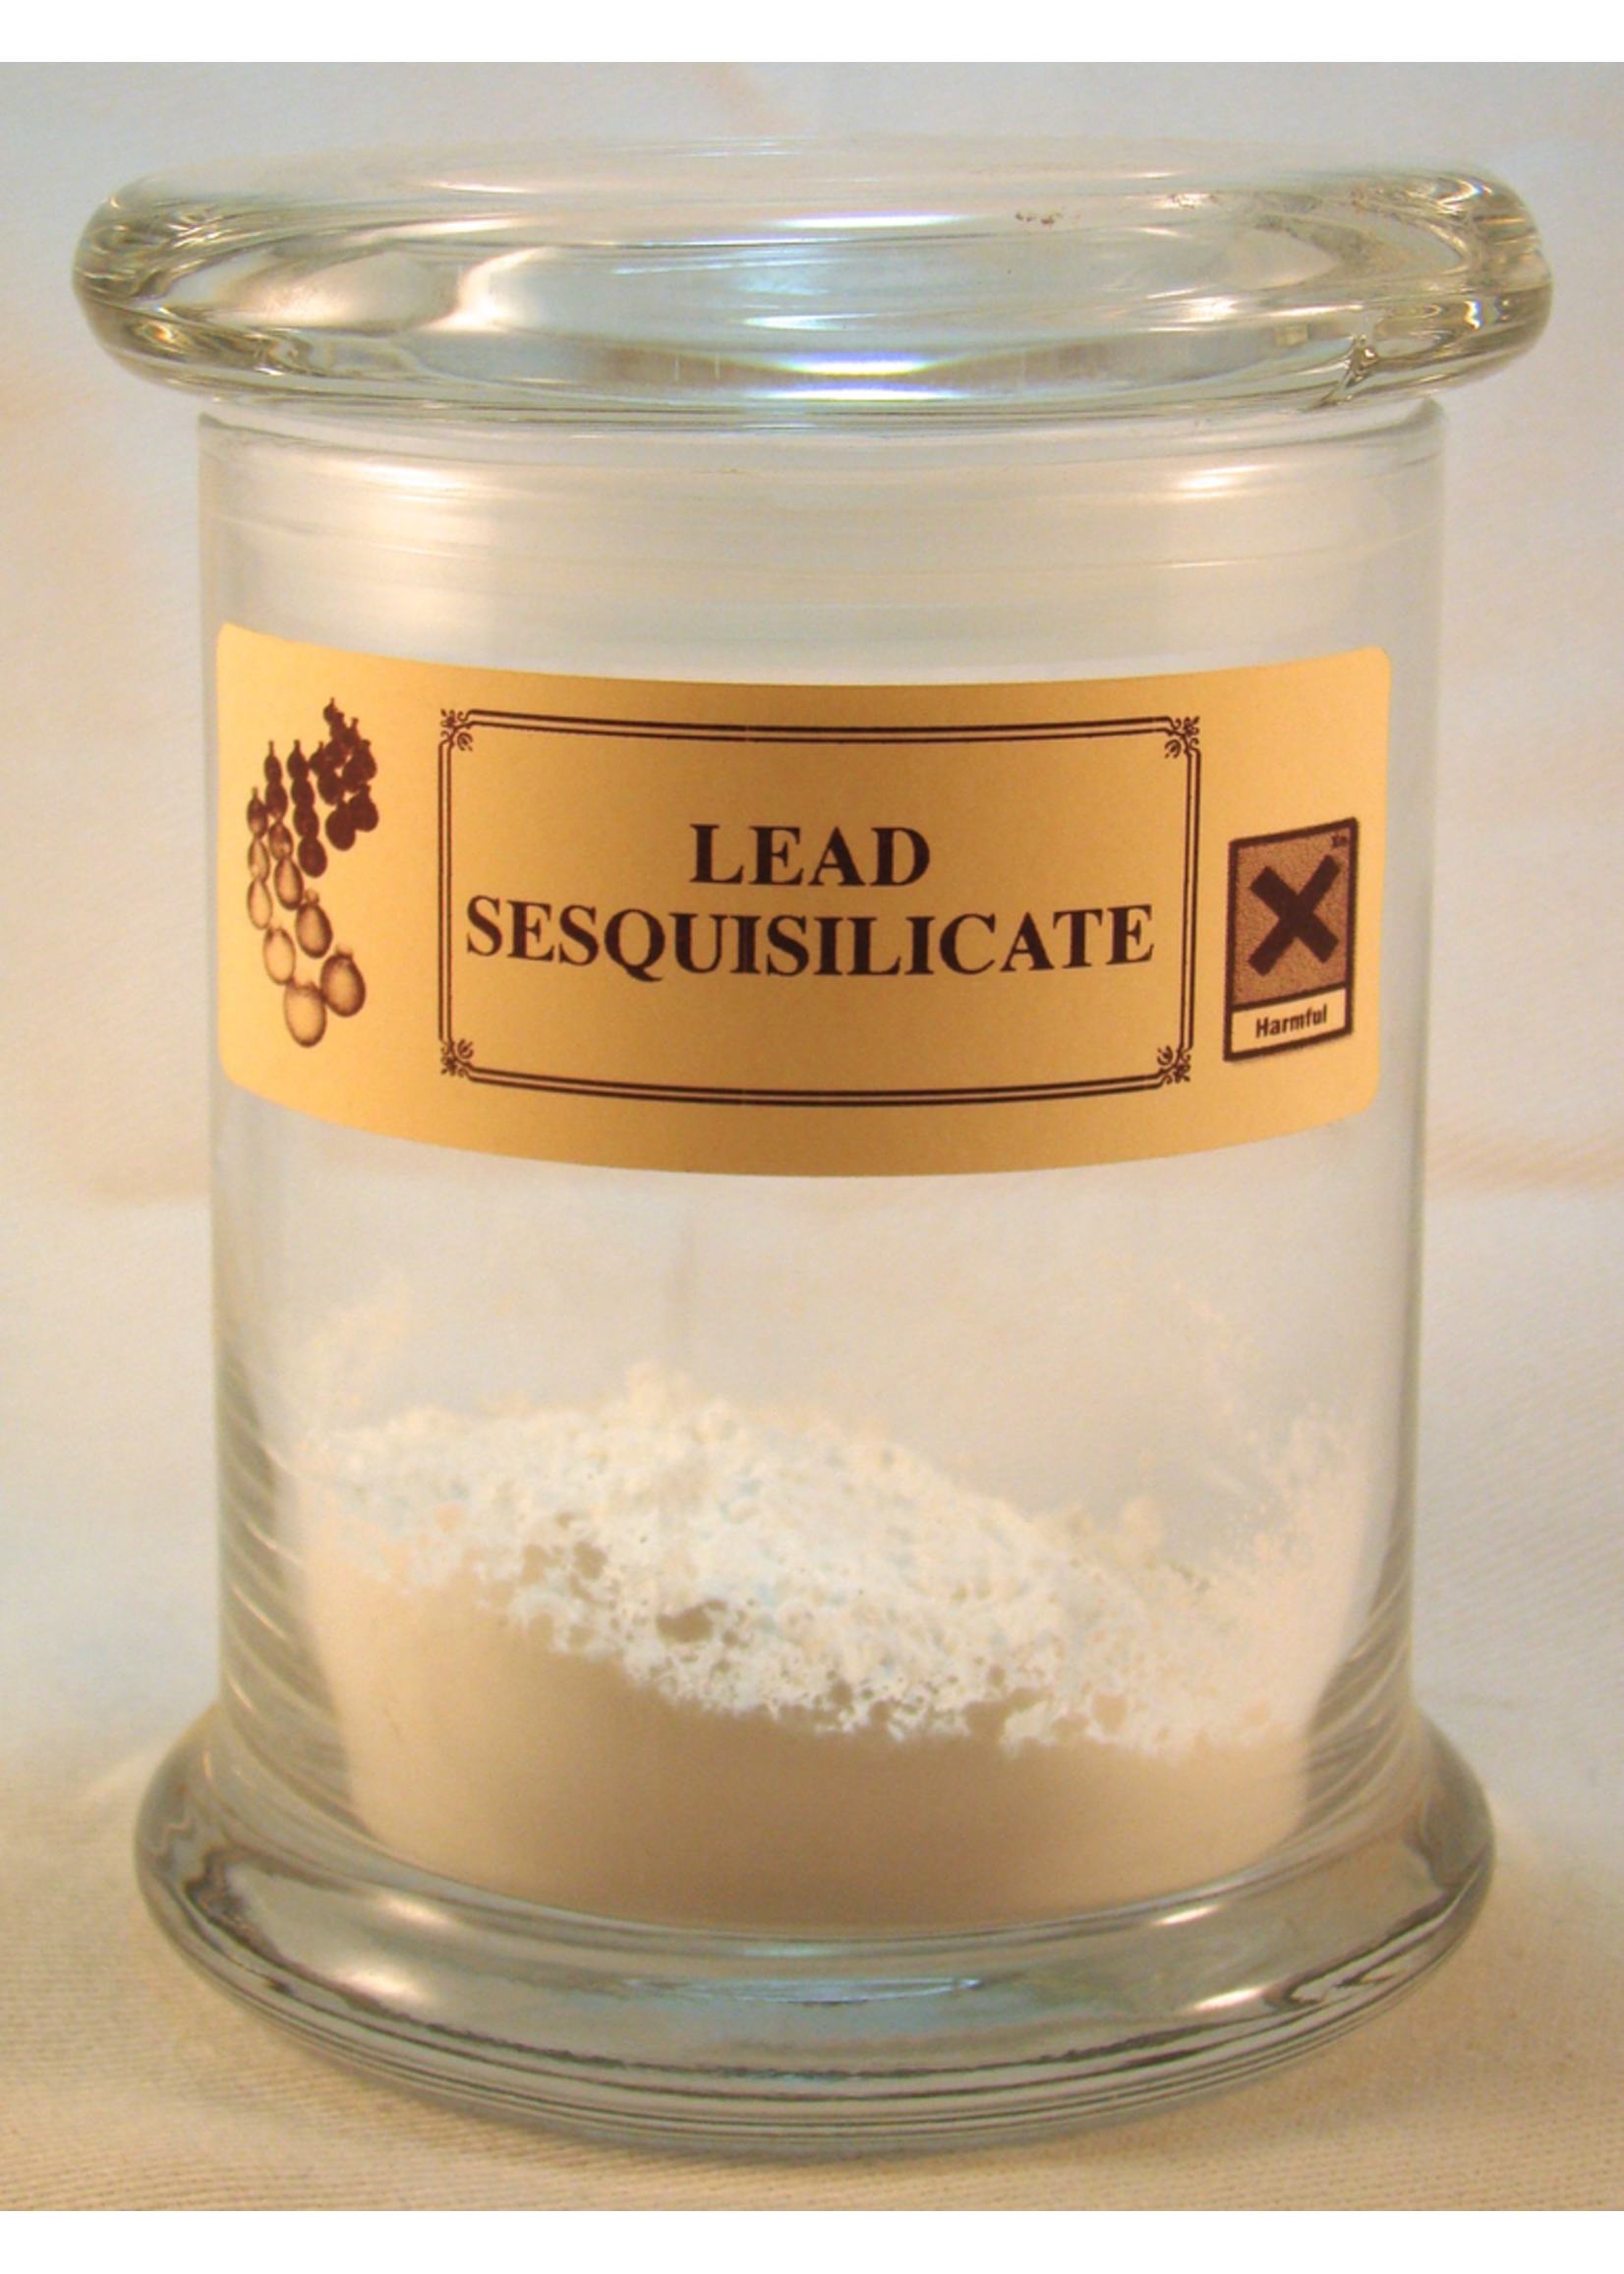 Lead Sesquisilicate